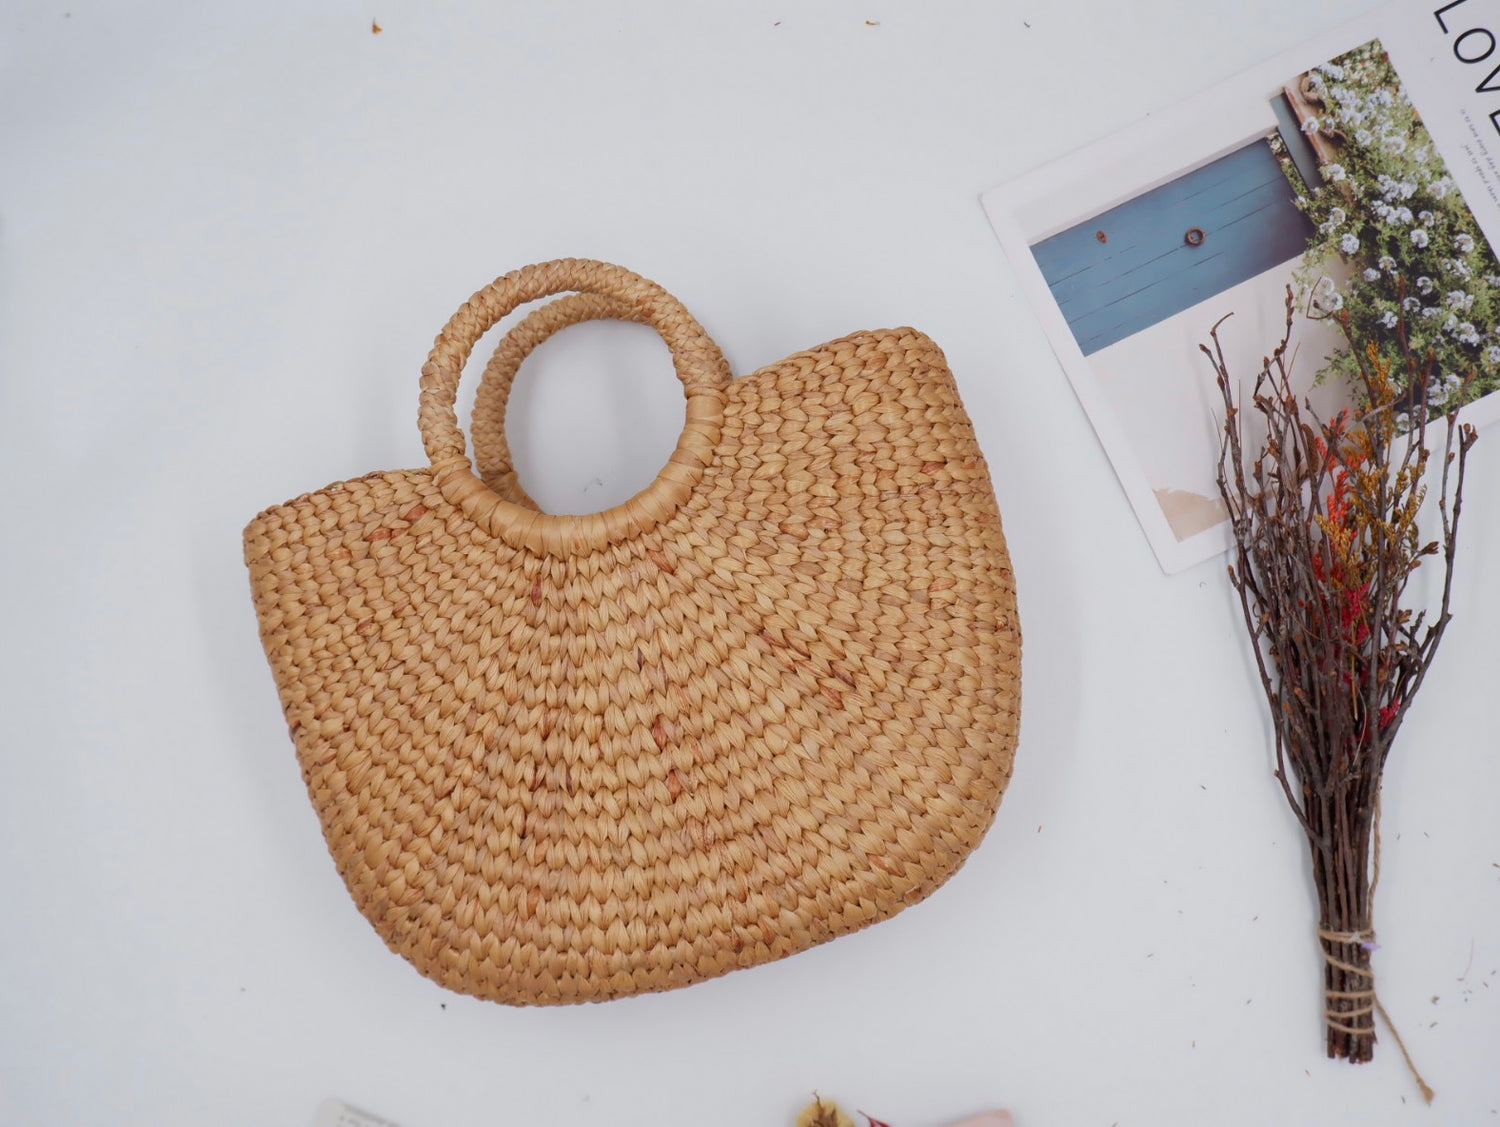 Buy METEEKA GLOBAL | Water Hyacinth Small Tote Bag | Reusable | Basket Bag  | Bamboo Tote | Beach Bags for Women | Natural bags | Women Handbags | Half  Moon Bag| Multi-Purpose Bag at Amazon.in